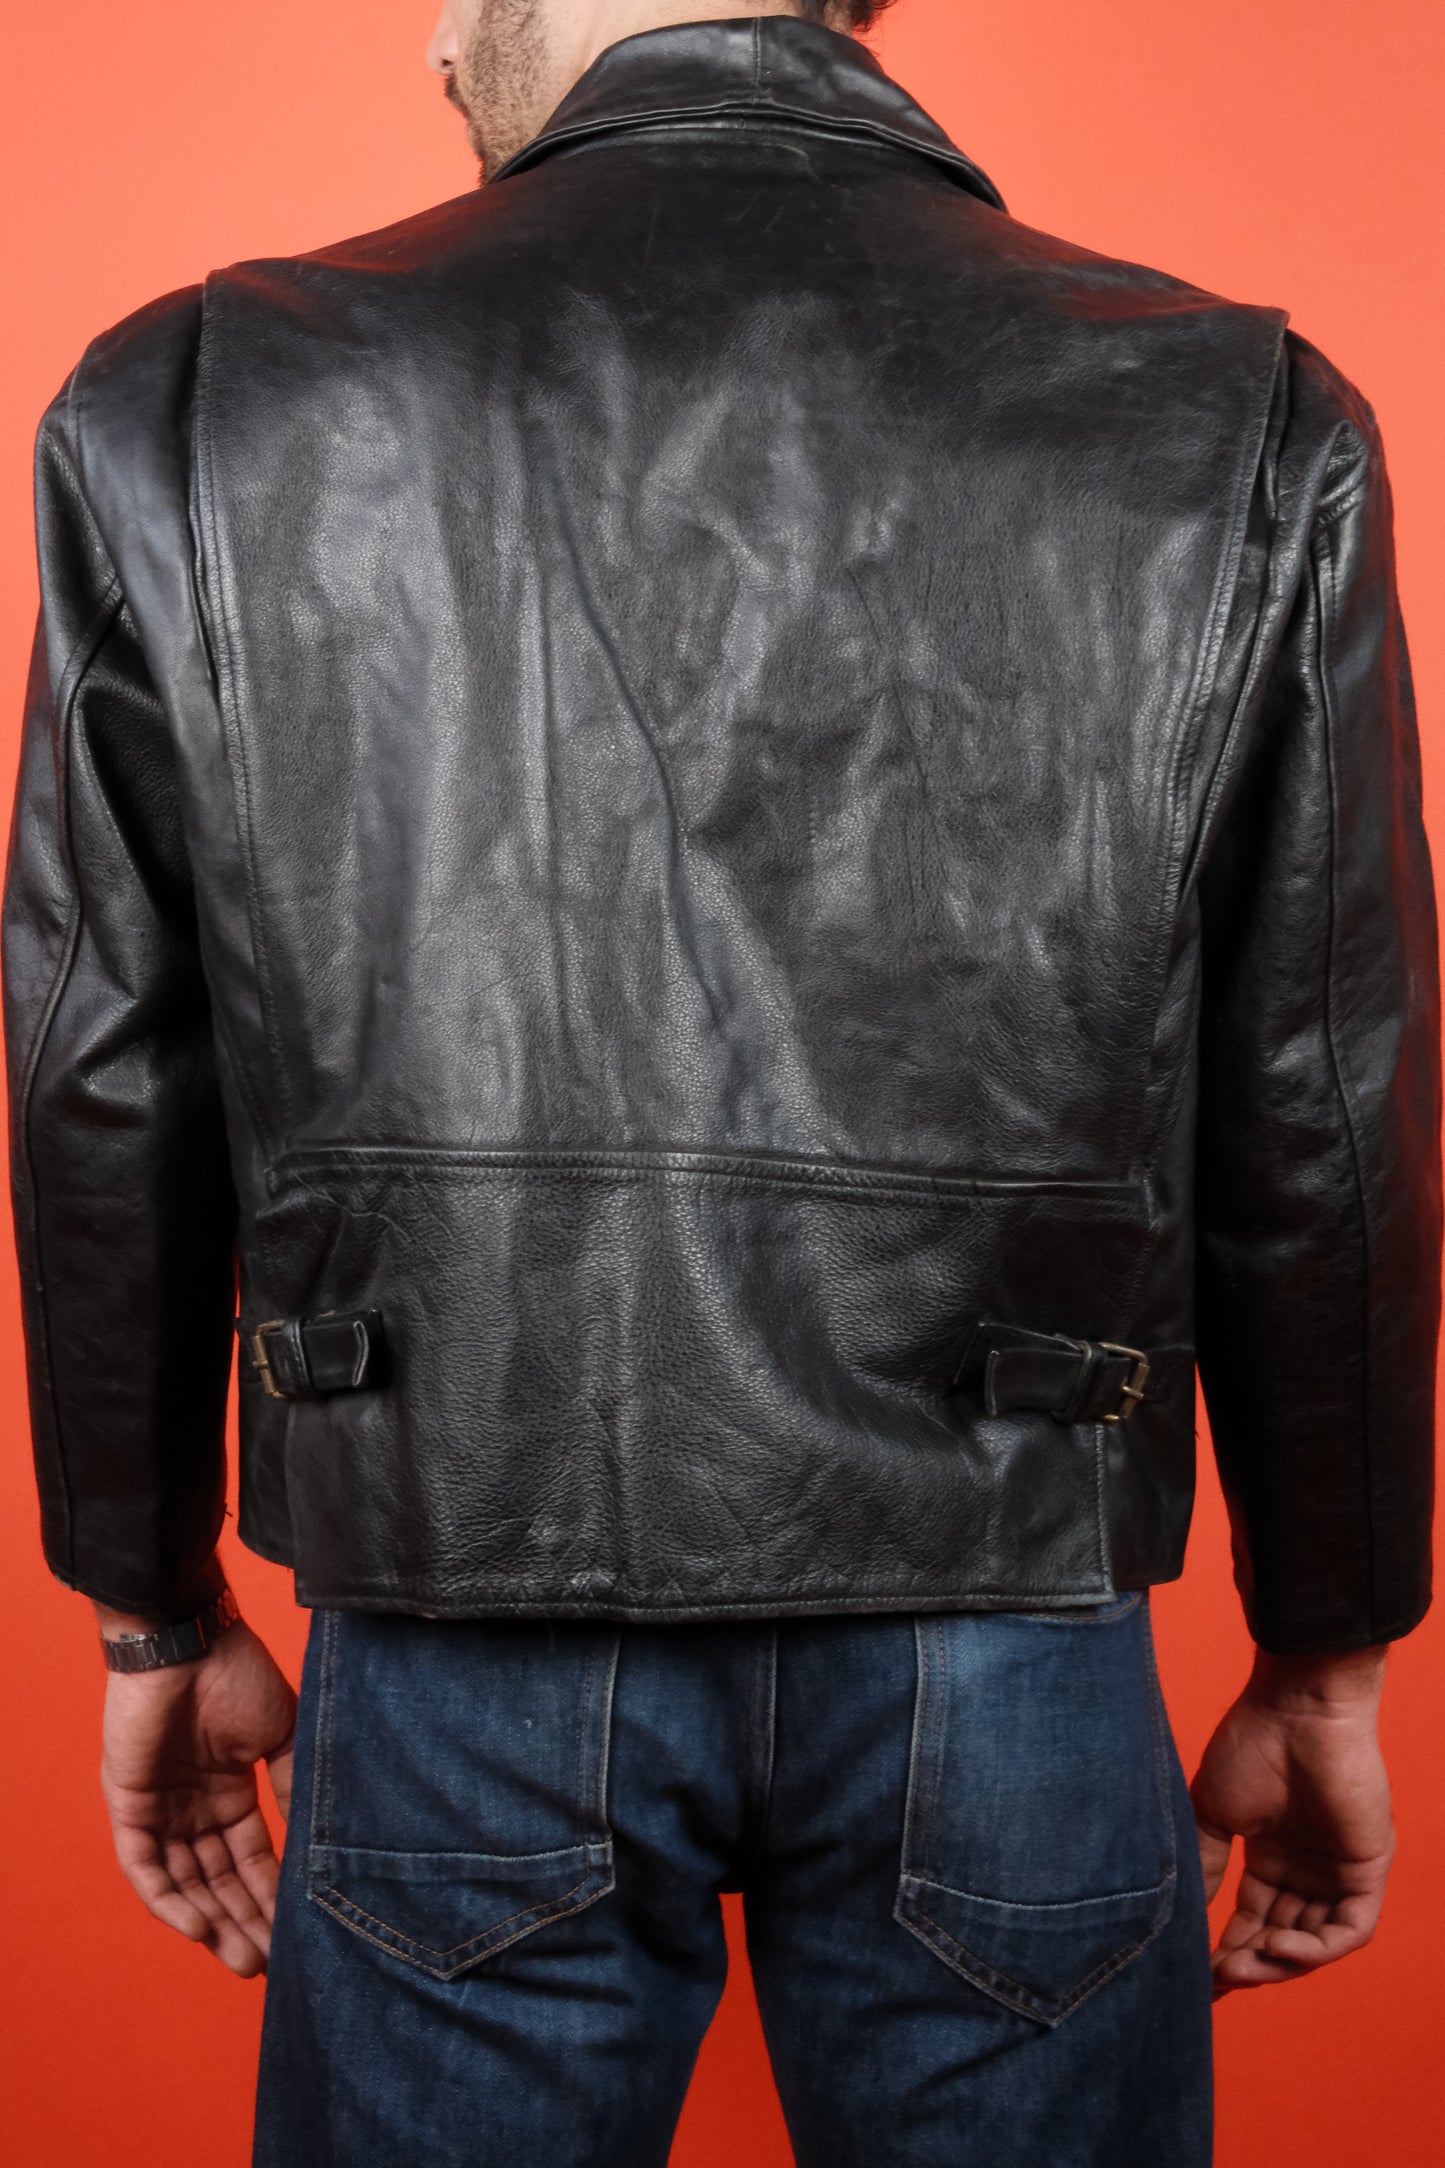 Unbranded Black Leather Jacket 'L' - vintage clothing clochard92.com